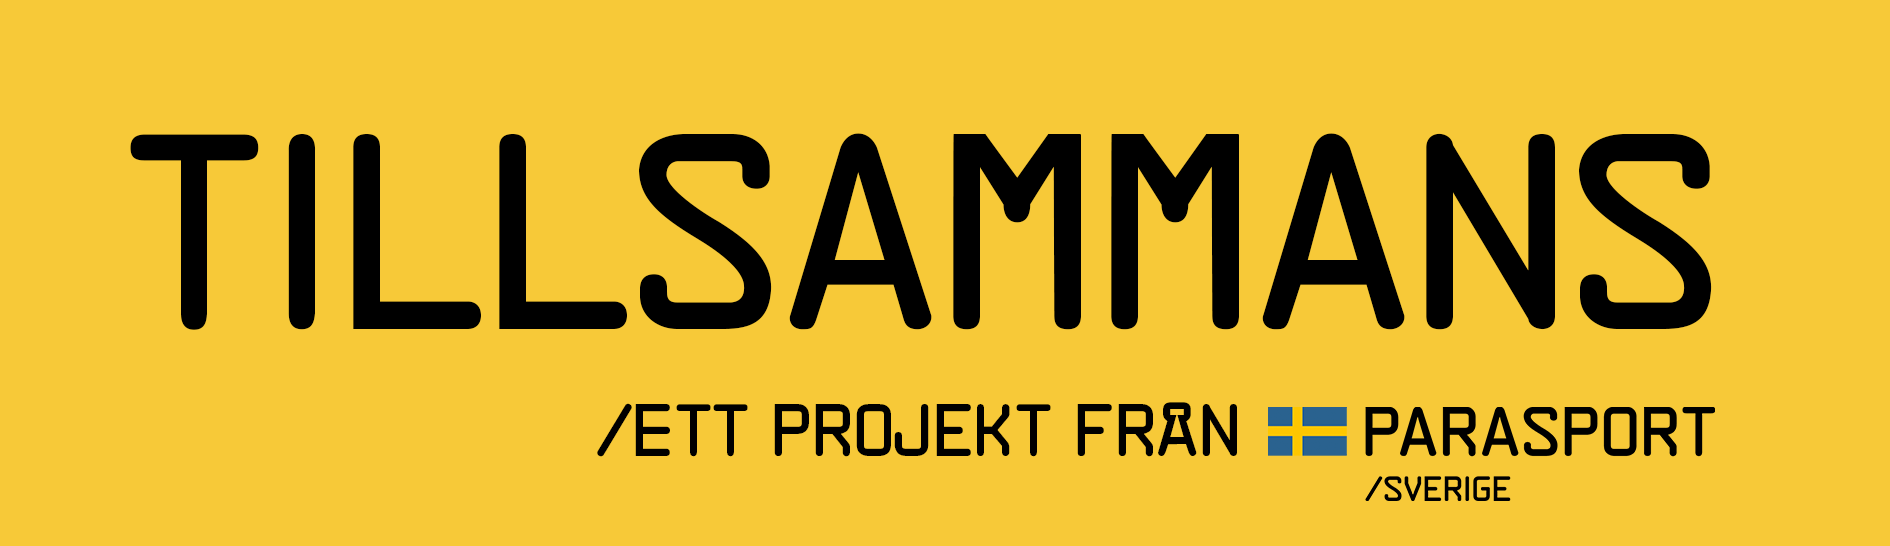 Logotyp för Tillsammansprojektet.